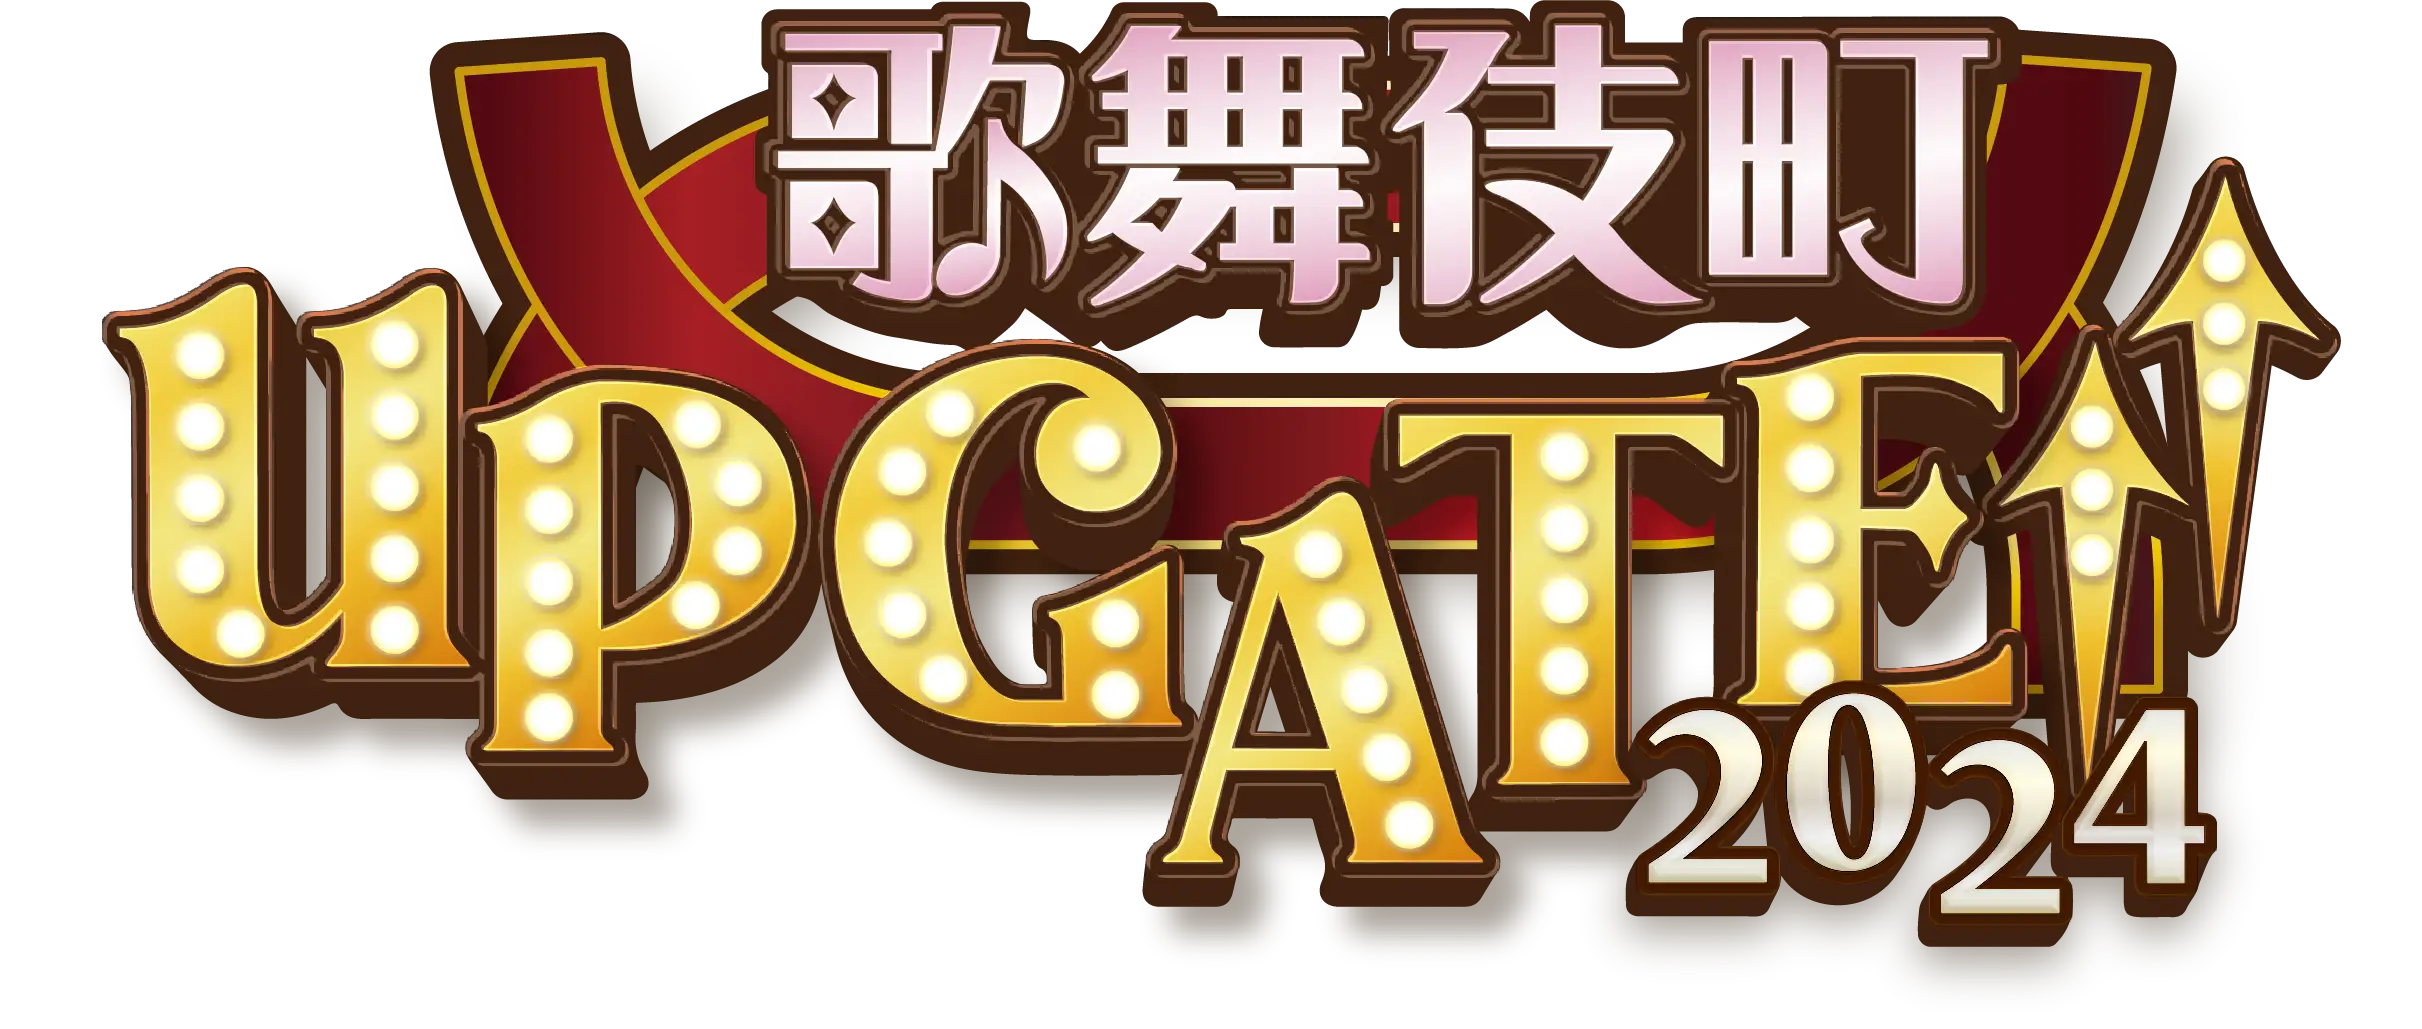 歌舞伎町 UP GATE↑↑ 2024